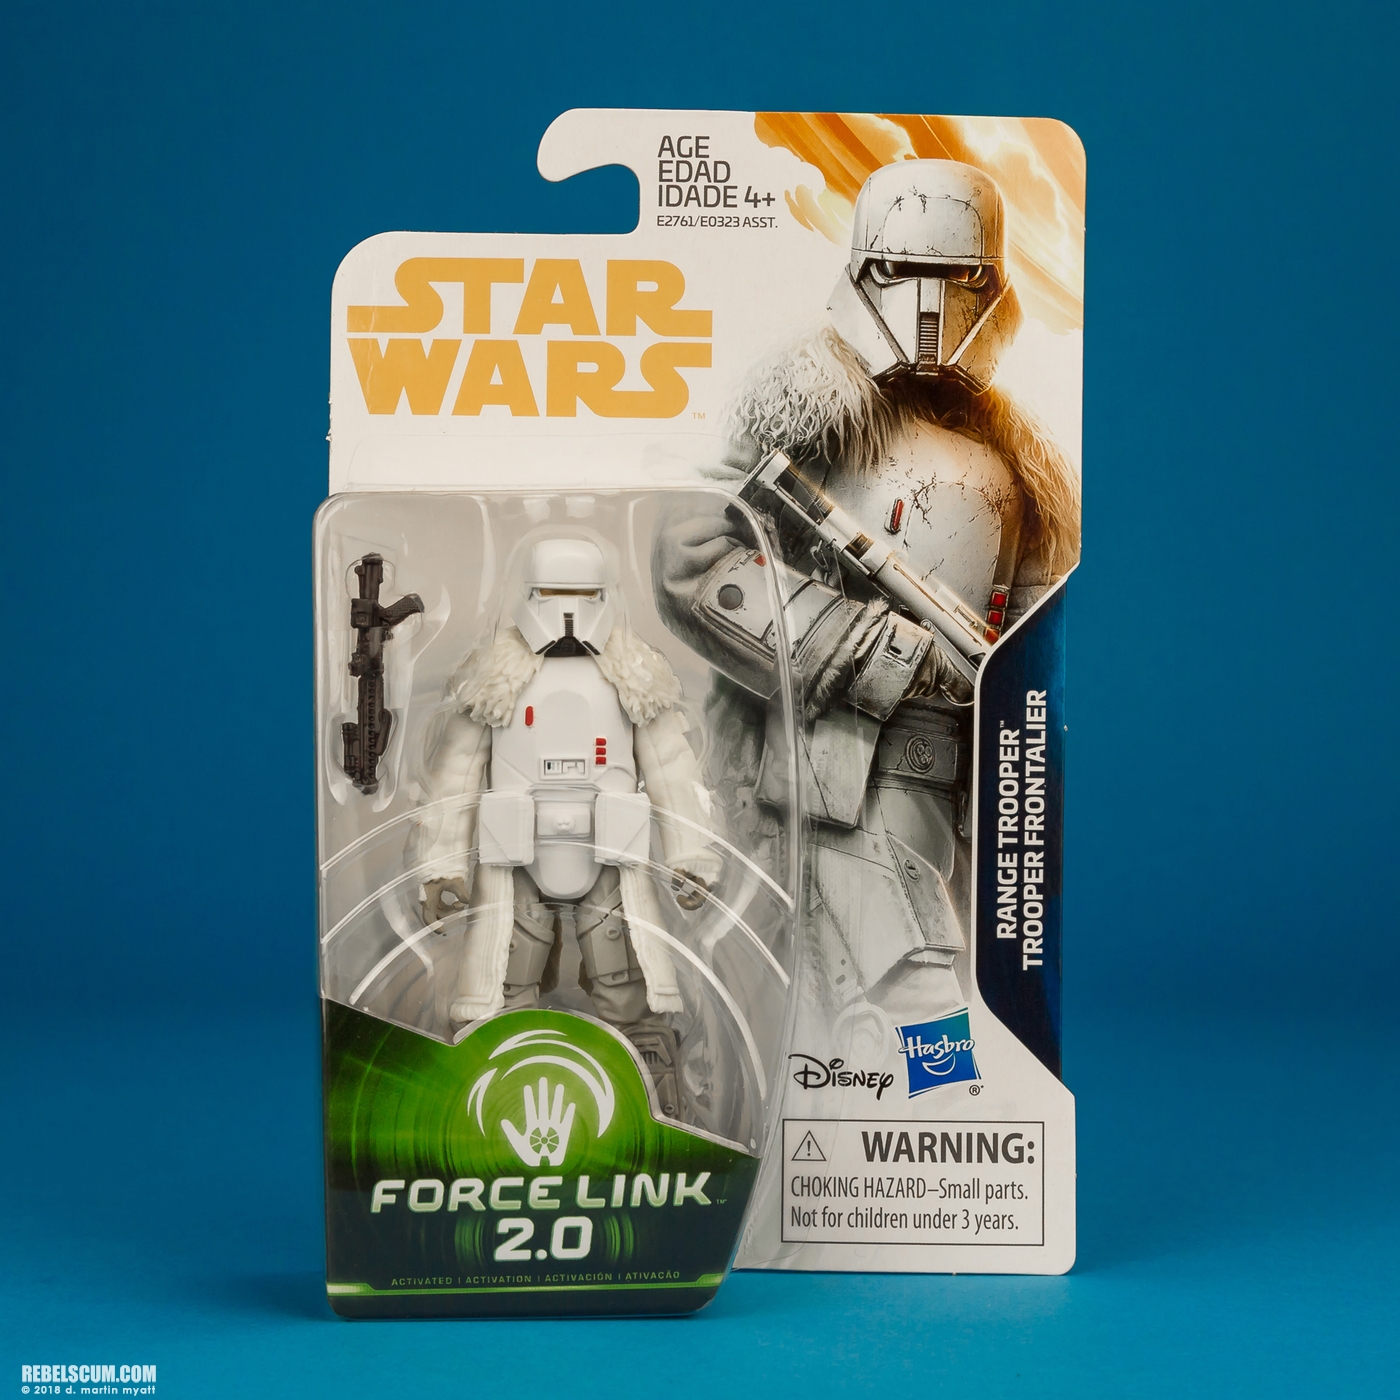 Range-Trooper-Solo-Star-Wars-Universe-ForceLink-2-Hasbro-010.jpg